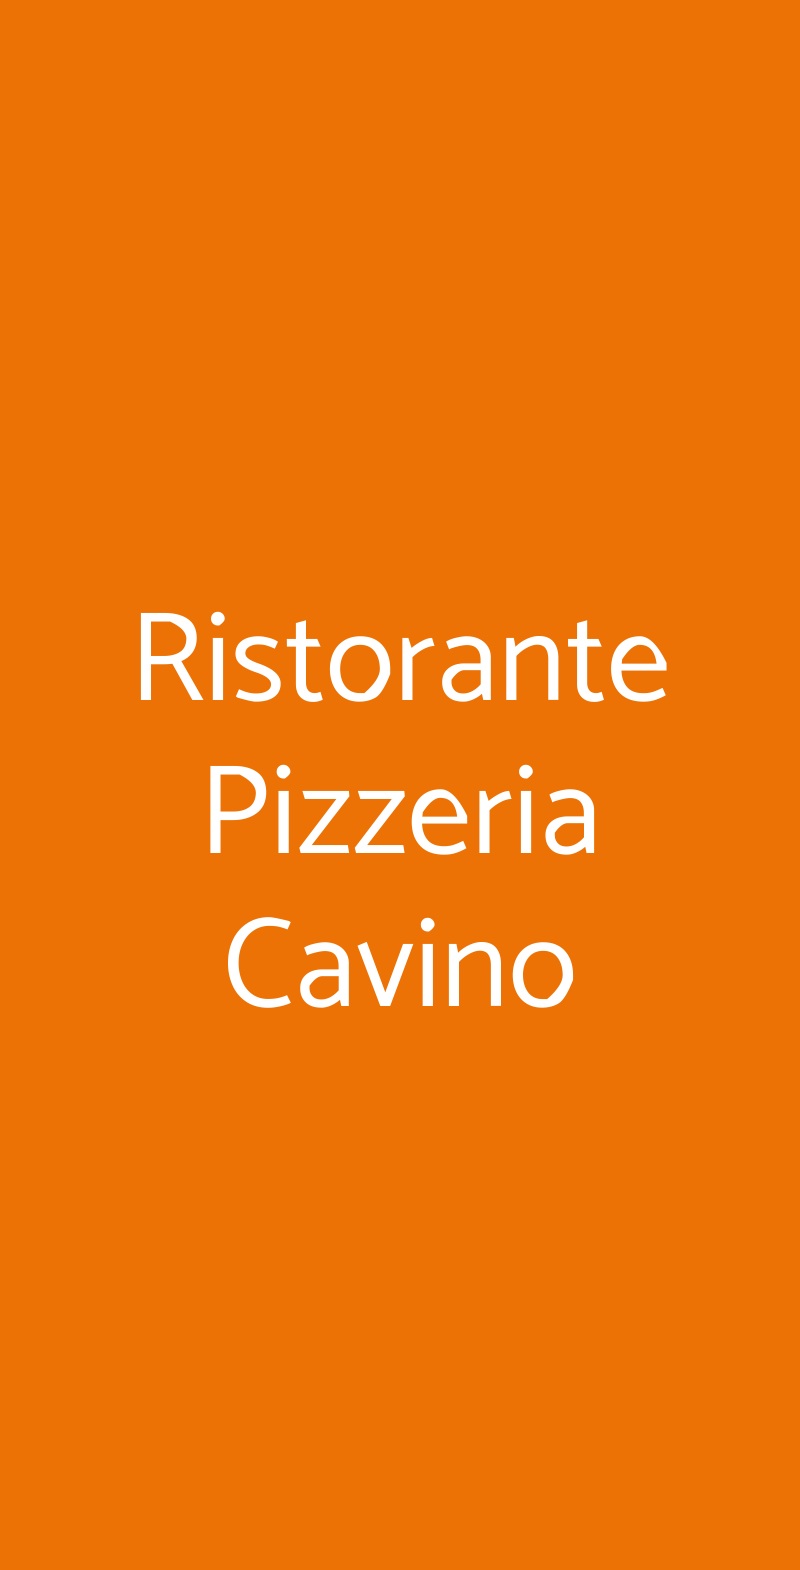 Ristorante Pizzeria Cavino San Giorgio delle Pertiche menù 1 pagina